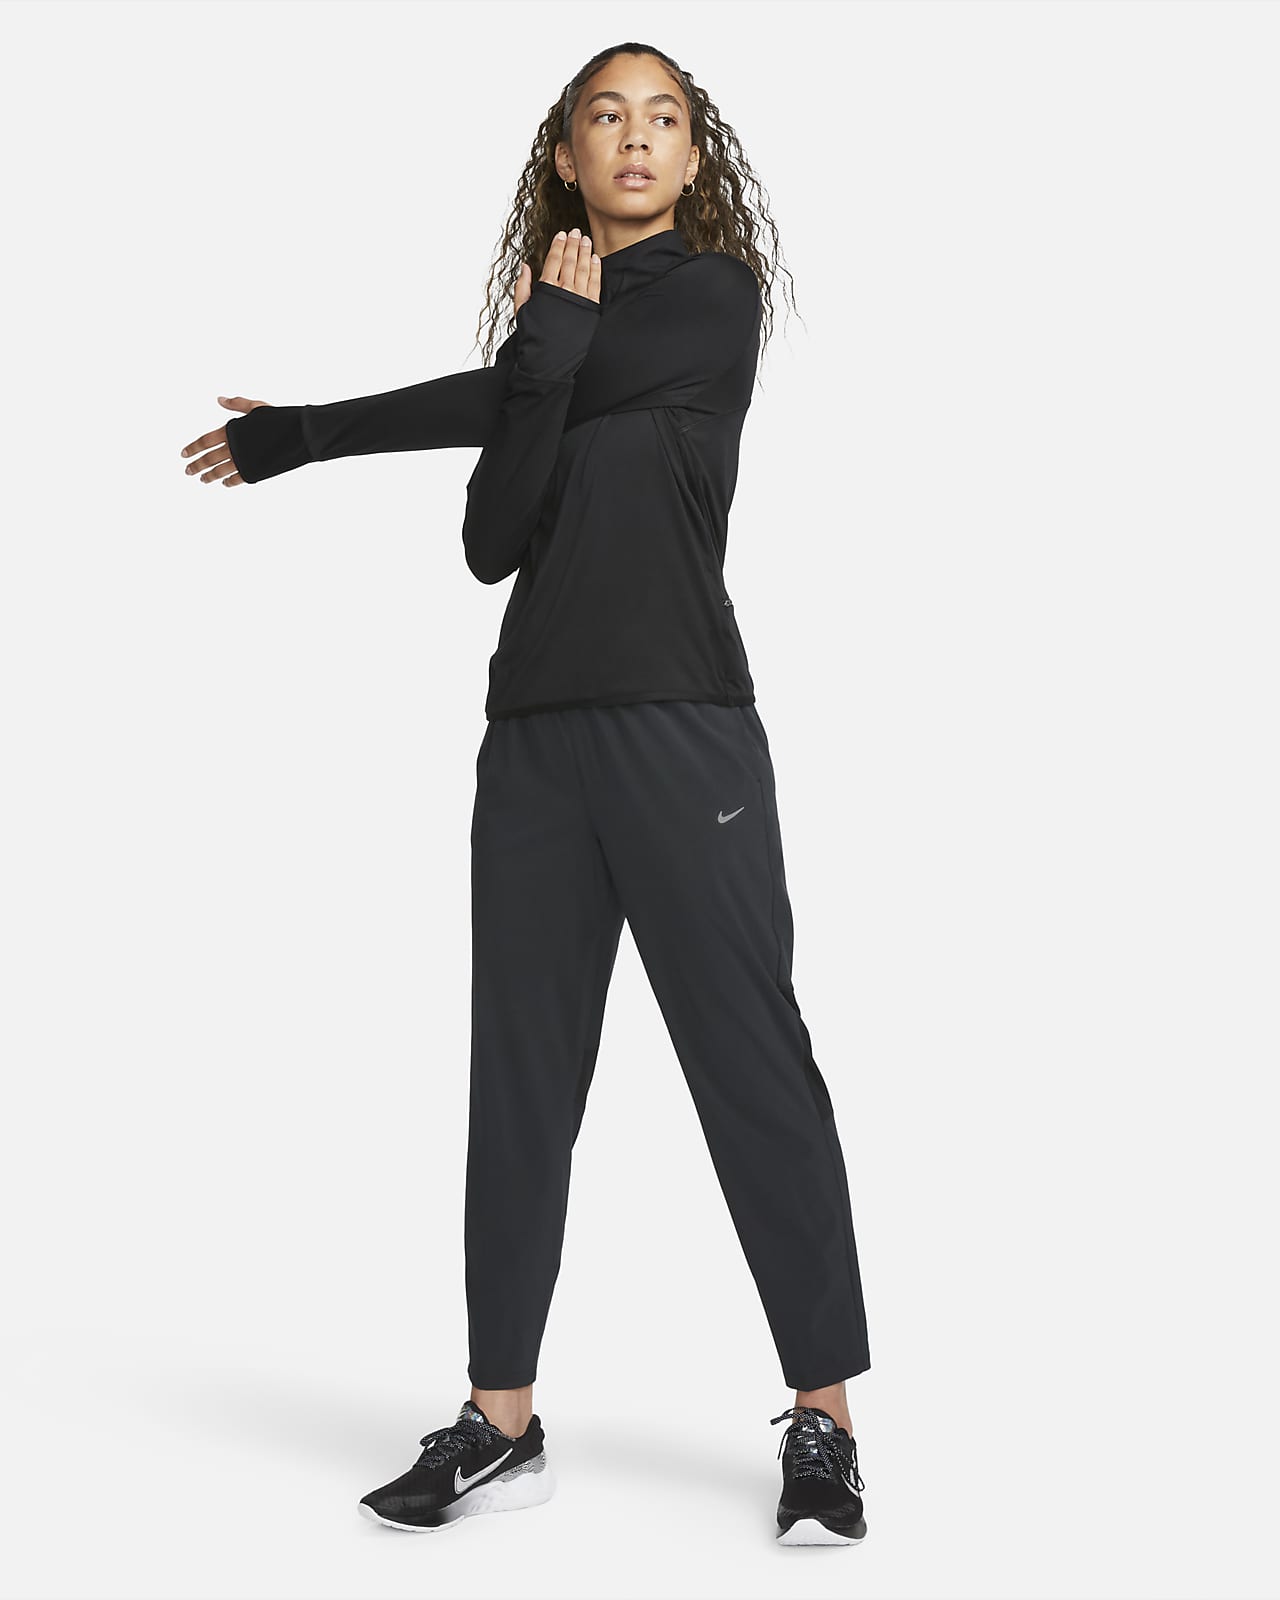 klæde Disciplinære tempo Nike Dri-FIT Fast Women's Mid-Rise 7/8 Running Trousers. Nike LU